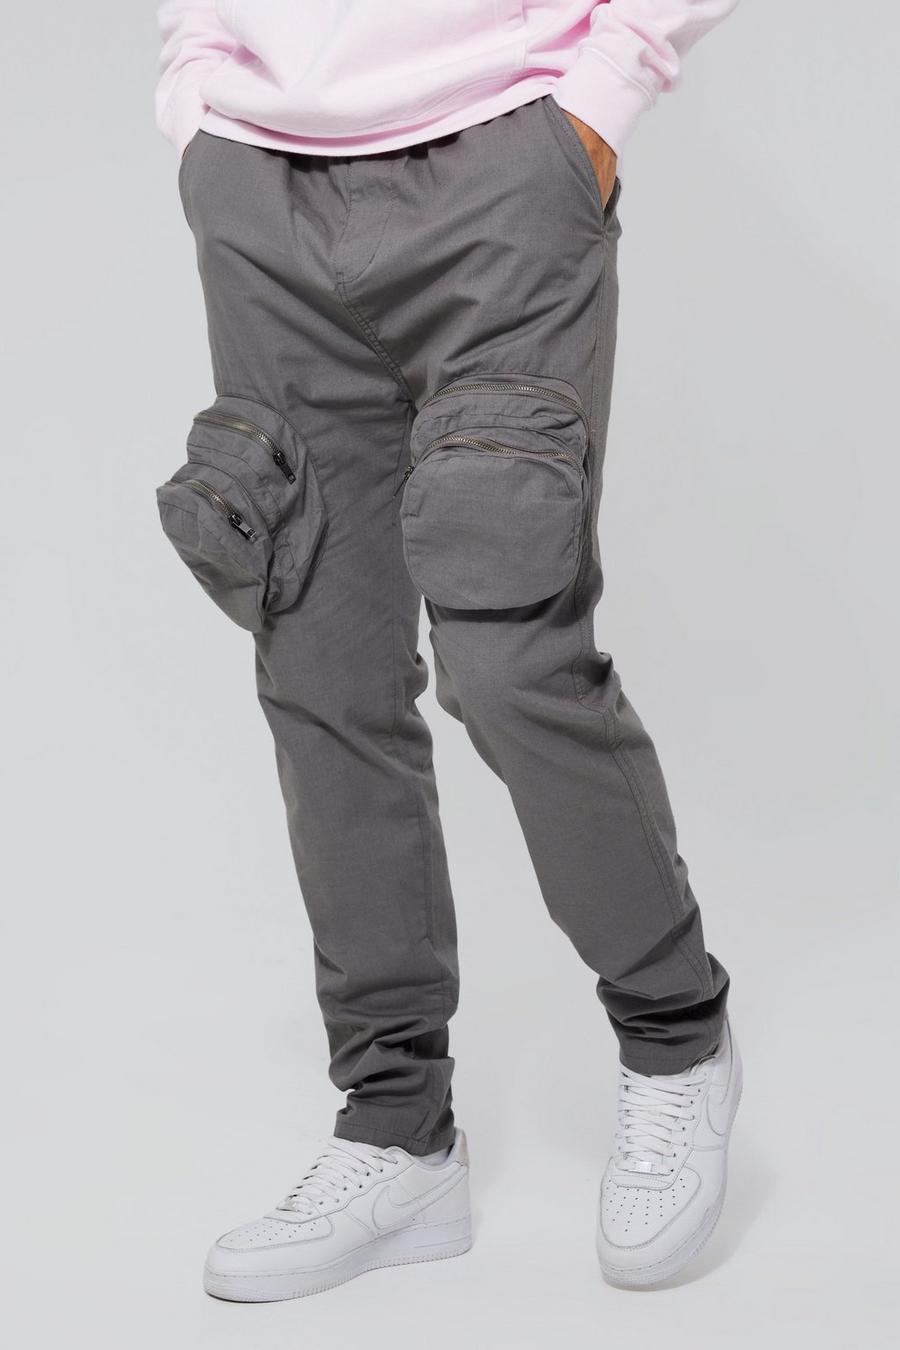 Pantalón Tall cargo ajustado elegante con cremallera 3D, Grey grigio image number 1